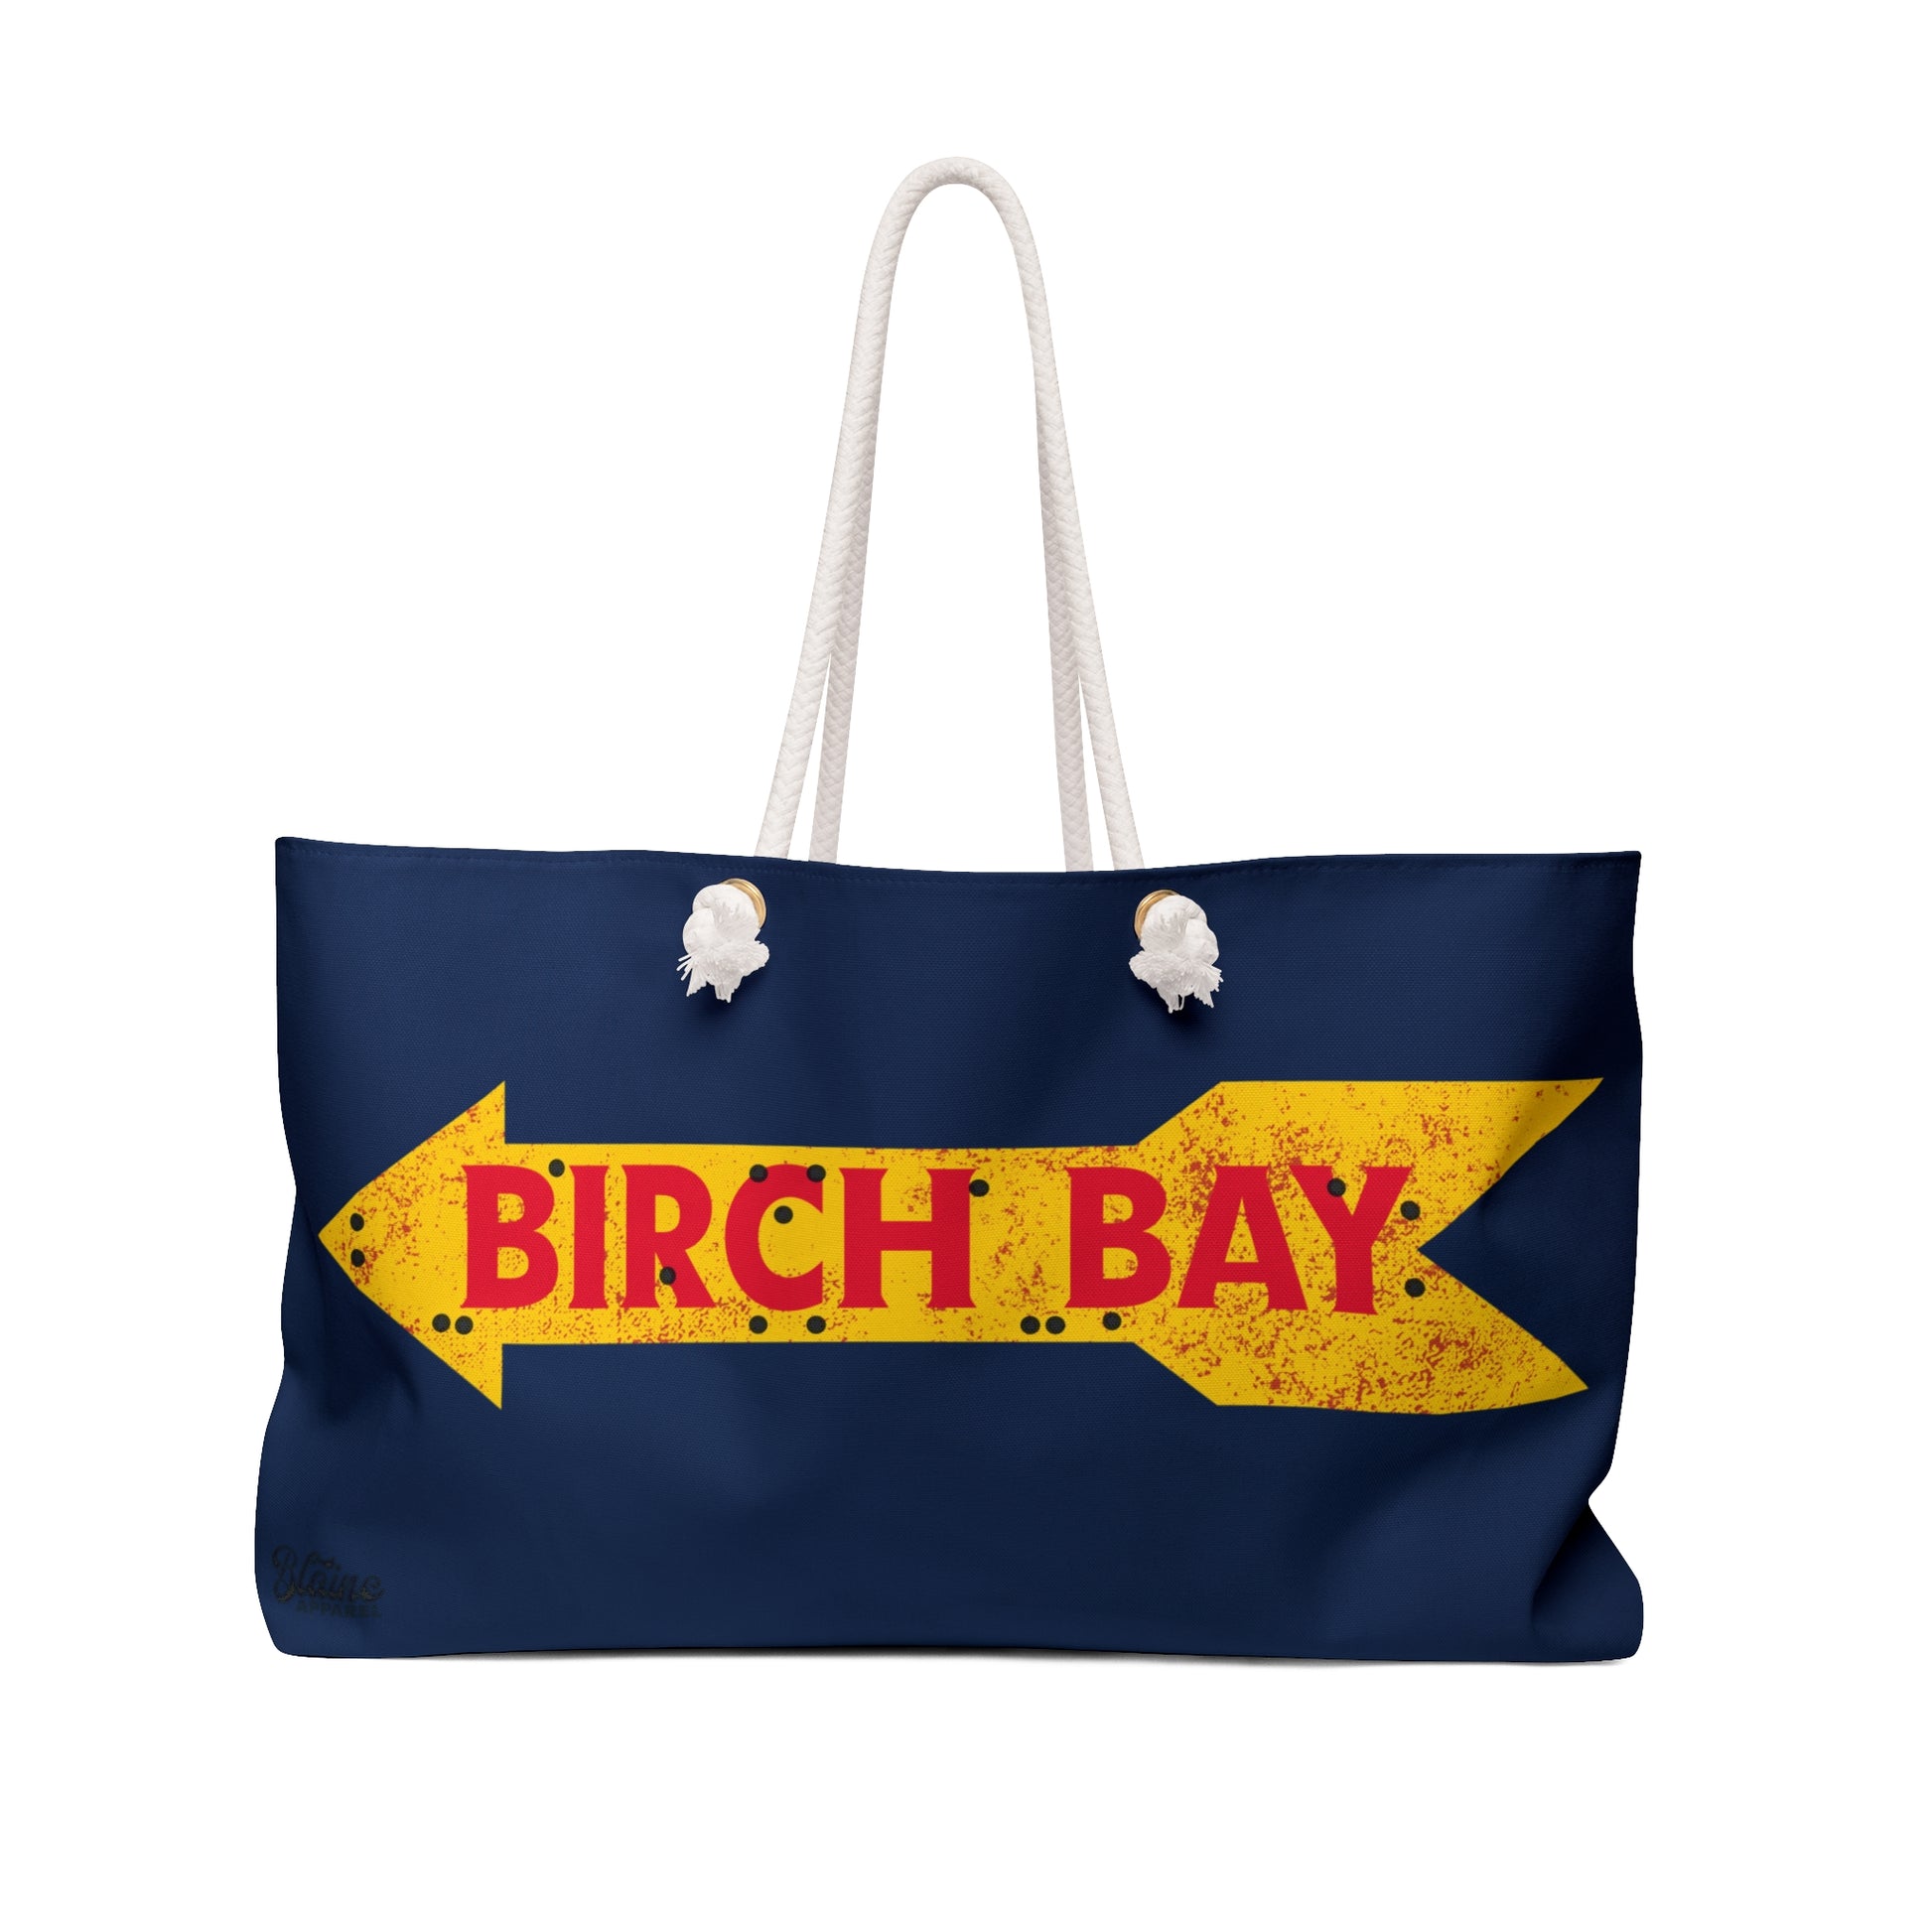 Birch Bay Weekender Tote Bag - Navy